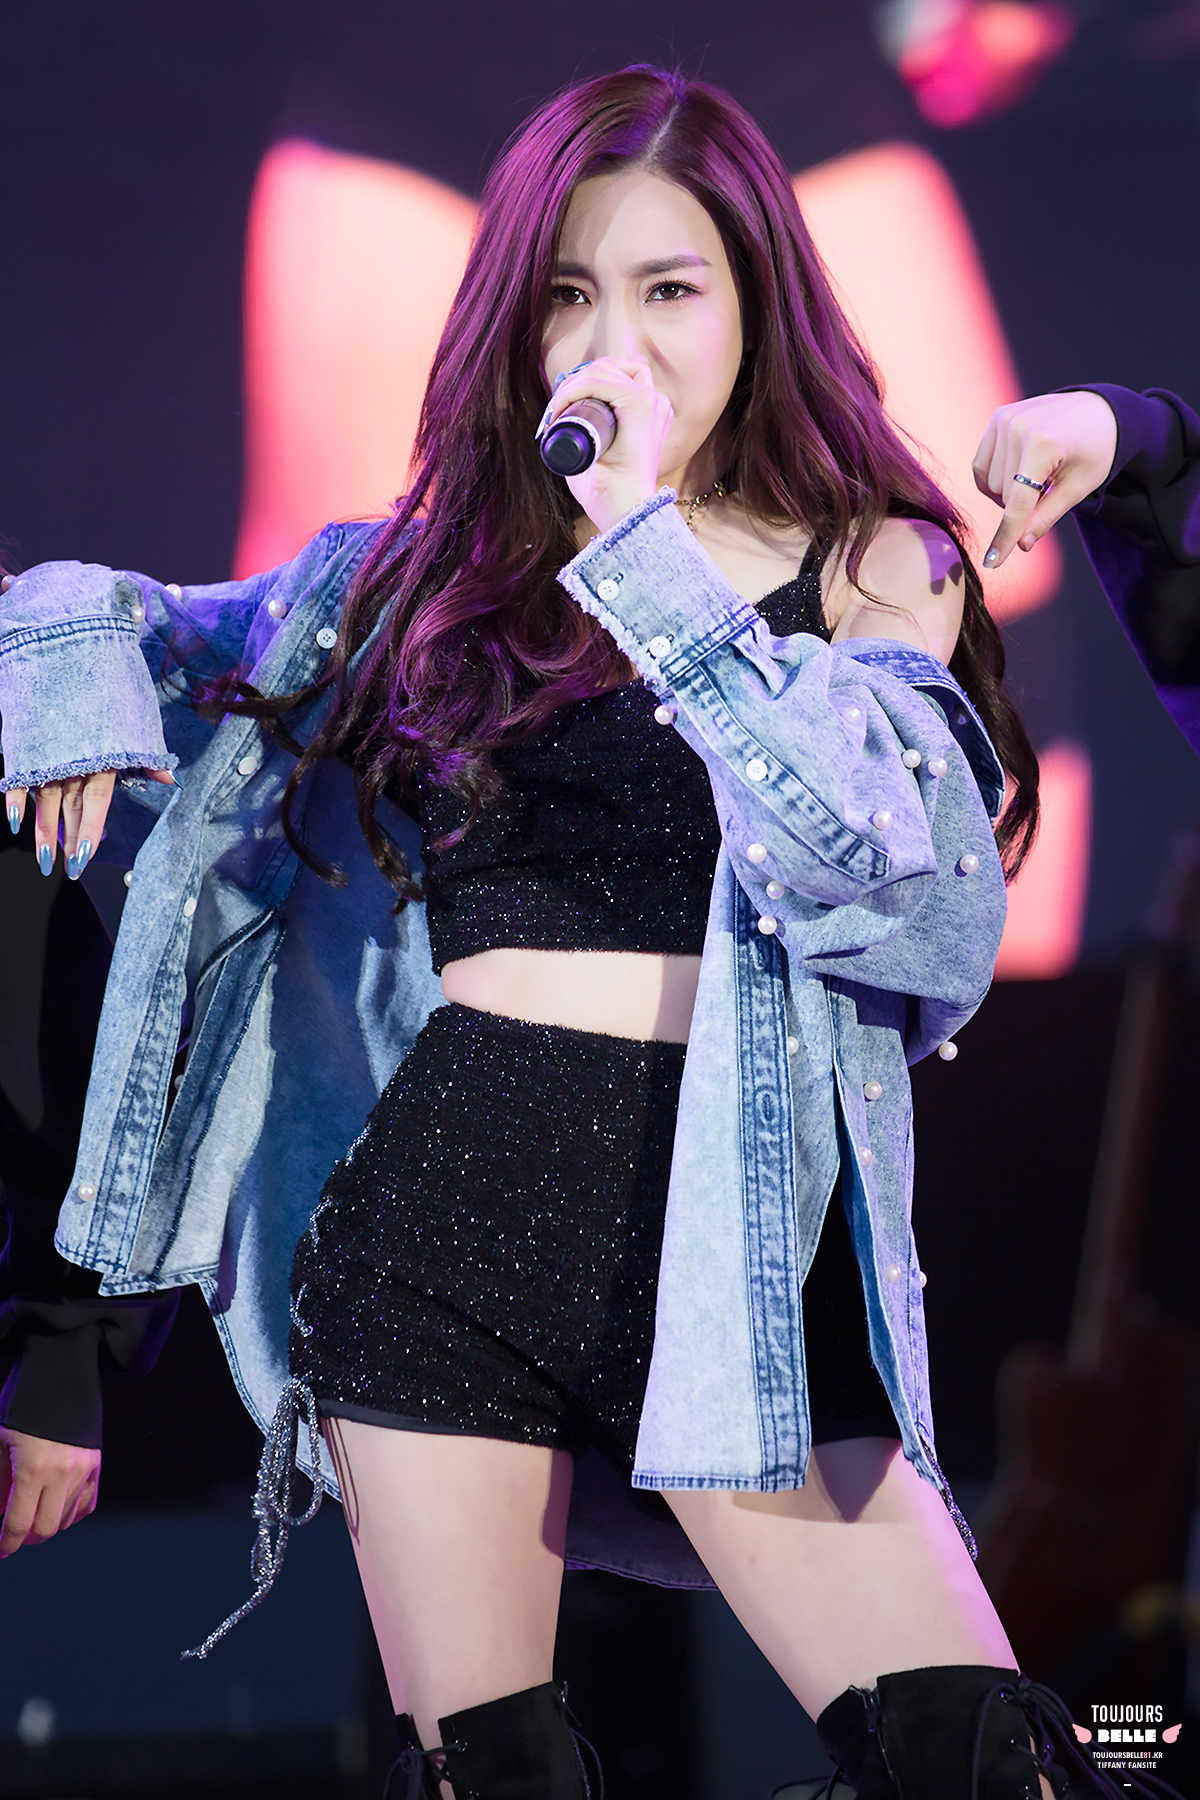 [PIC][21-04-2017]Tiffany khởi hành đi LA – Mỹ để tham dự "The 15th Korea Times Music Festival 2017" vào tối nay - Page 3 34012511730_3c234d4d3b_o